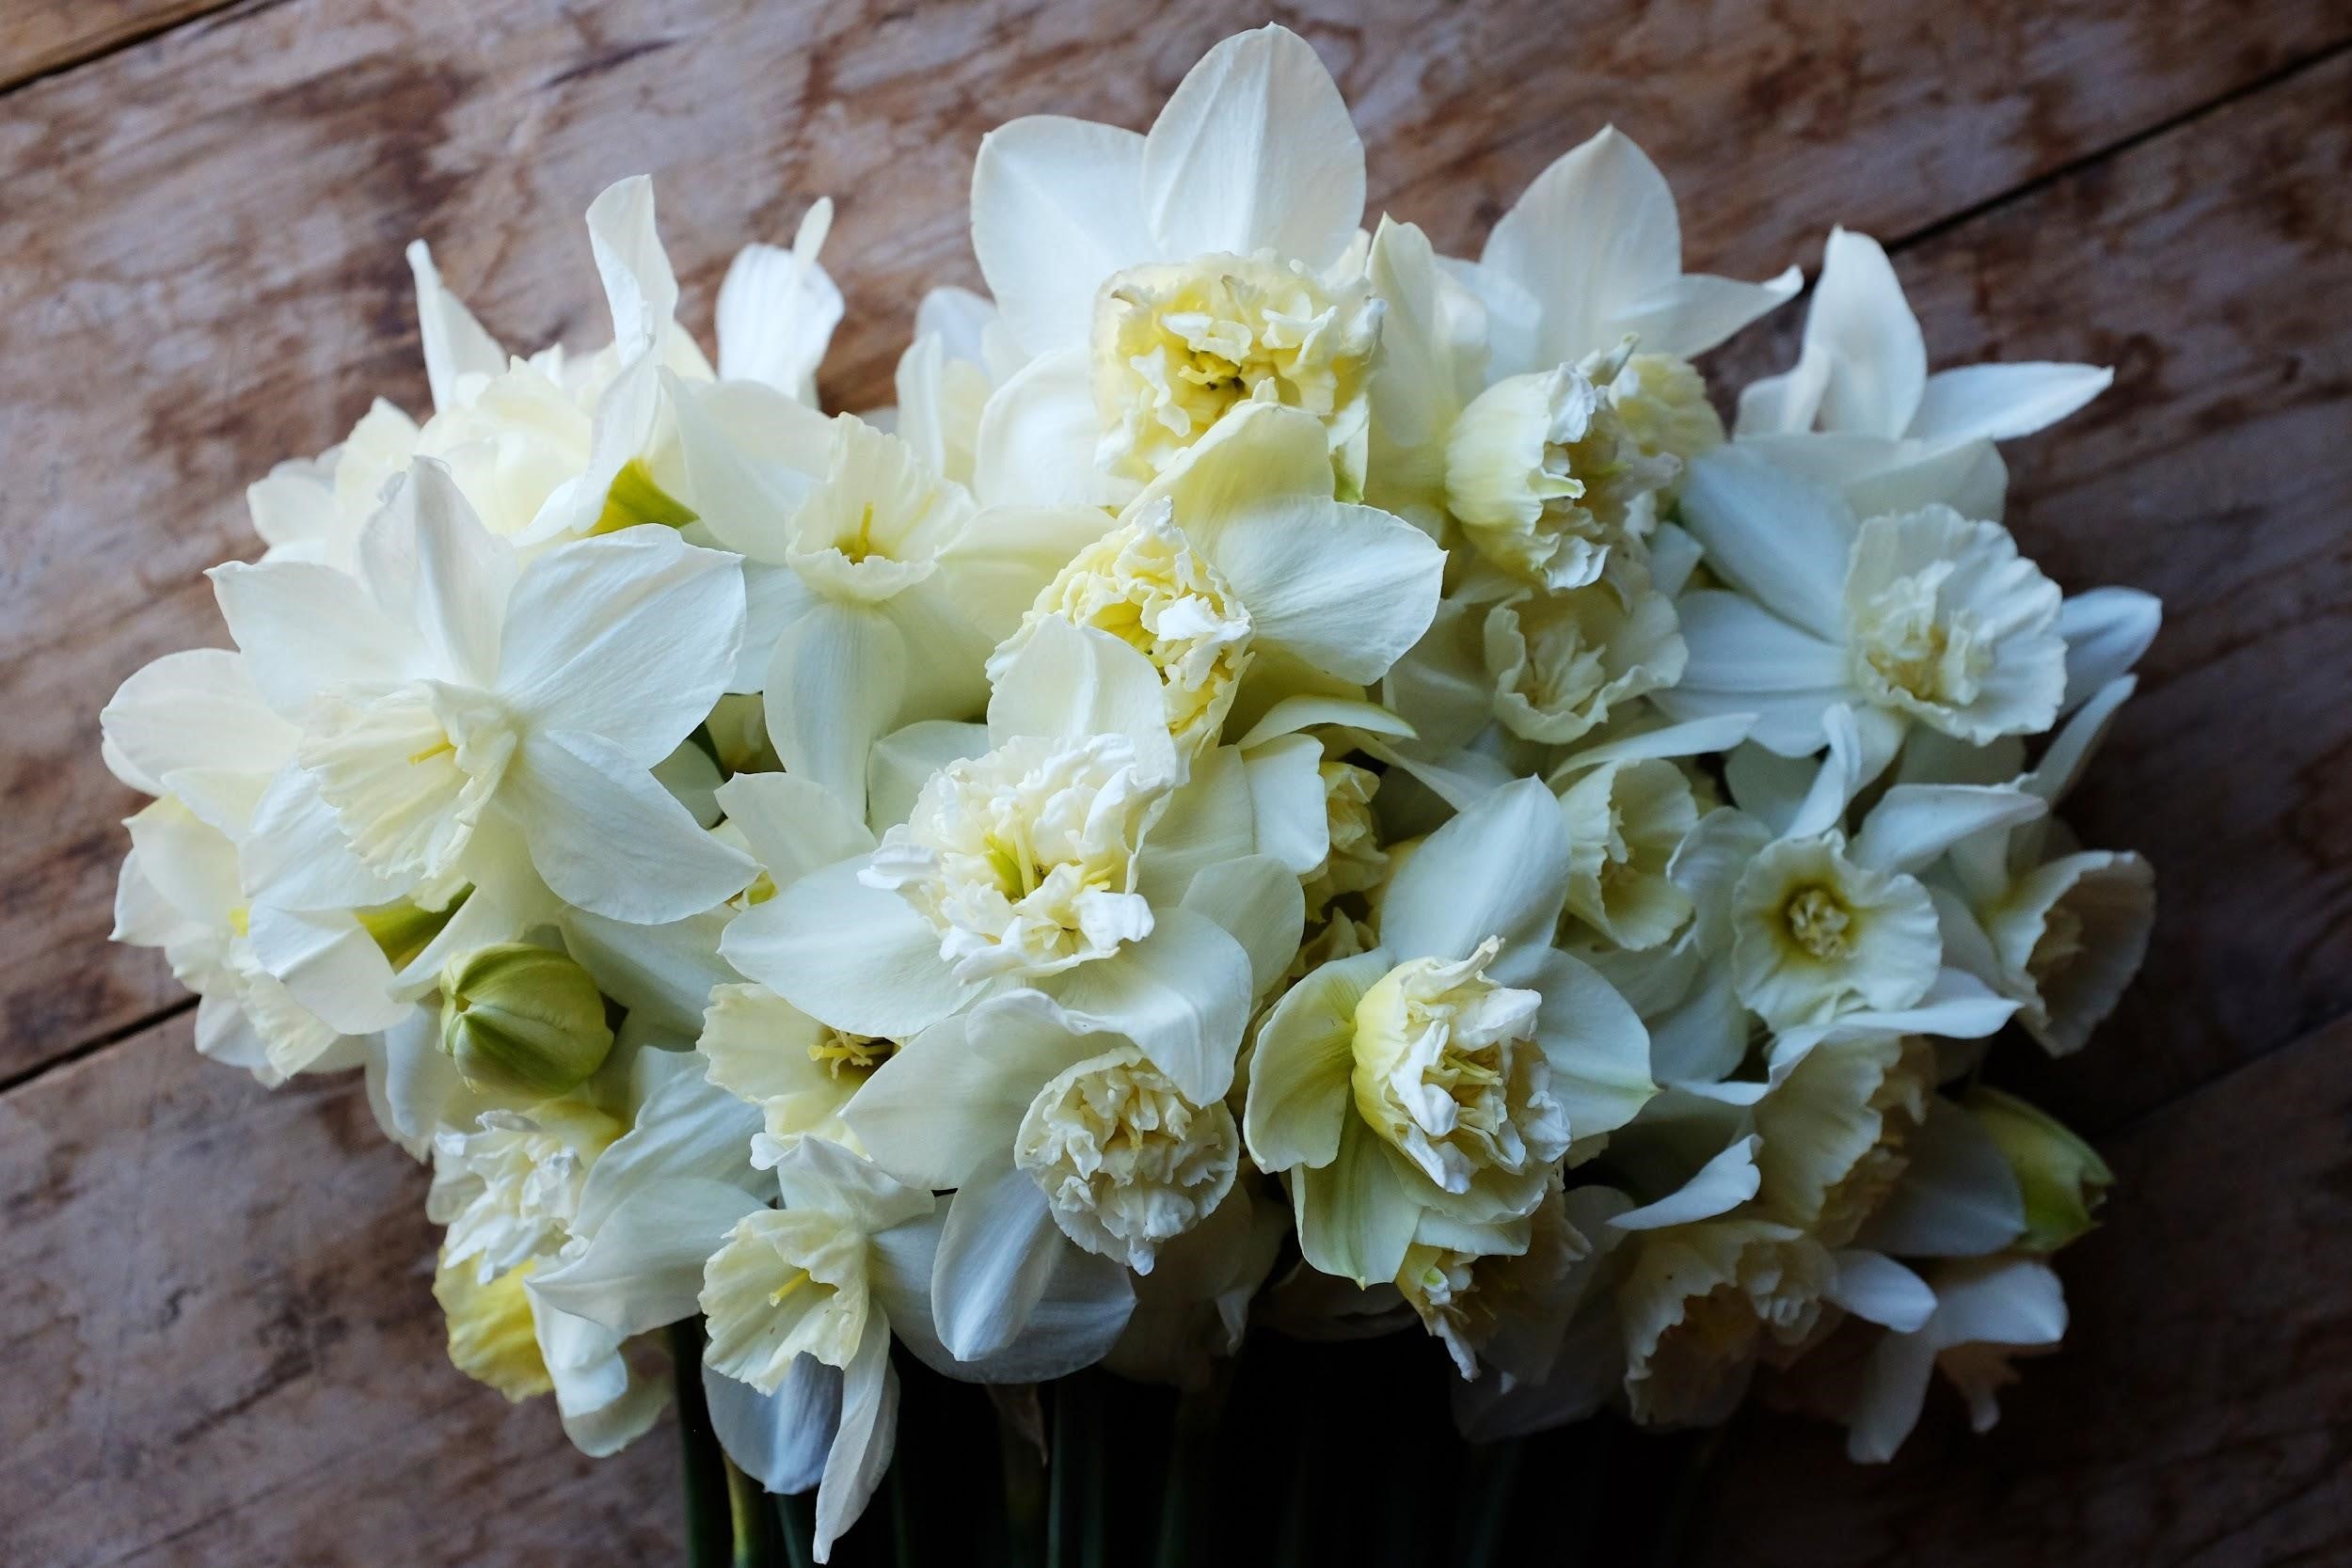 White Marvel Daffodil Bulbs